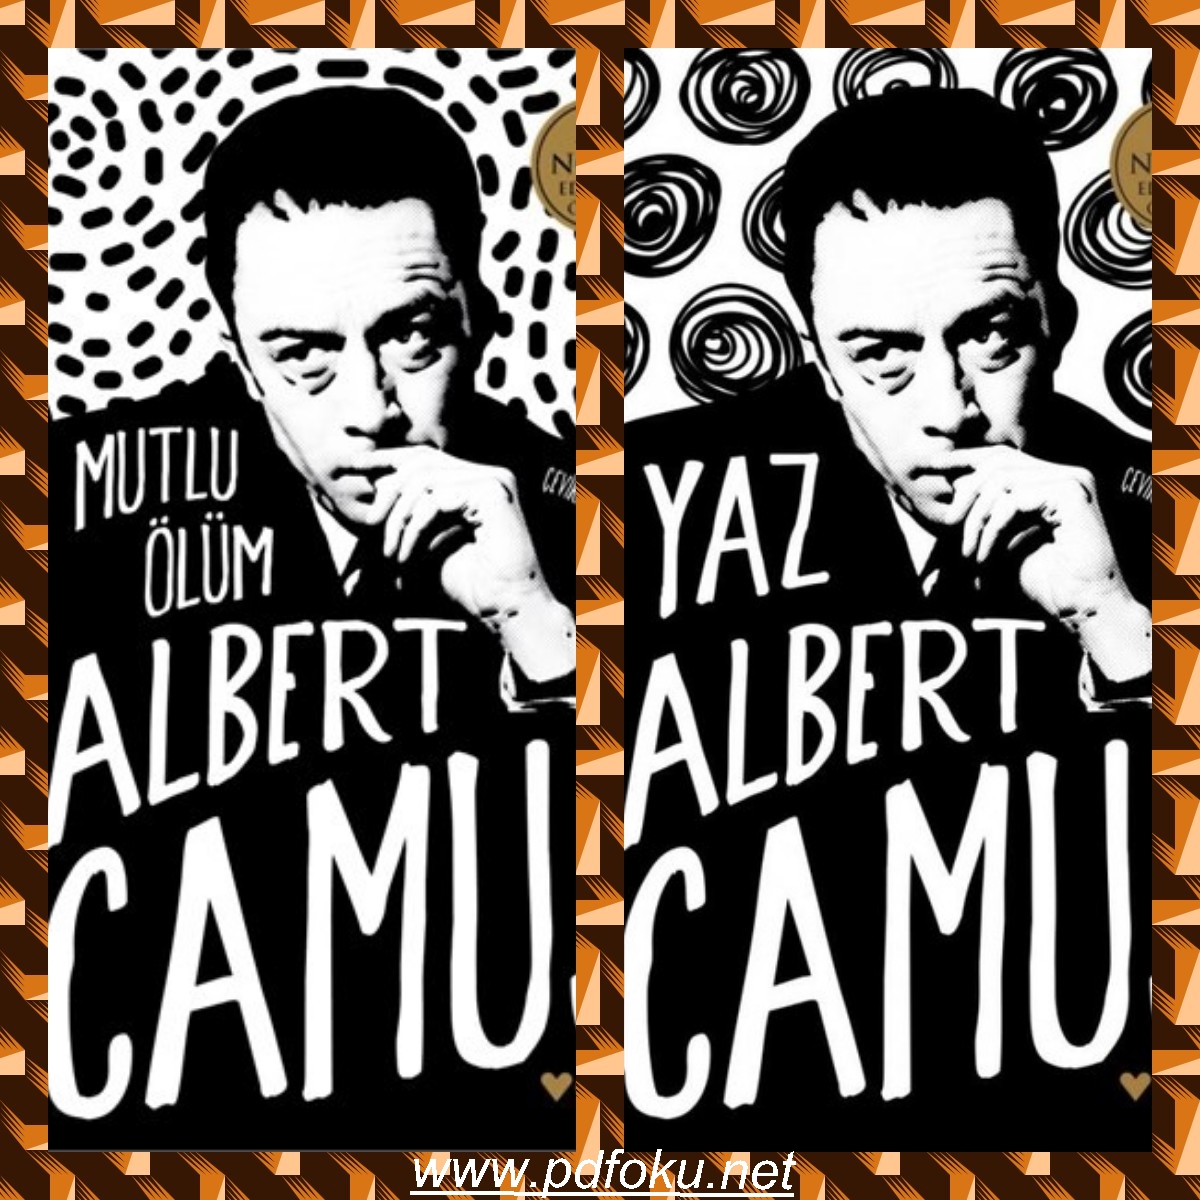 Mutlu Ölüm ve Yaz Kitapları – Albert Camus